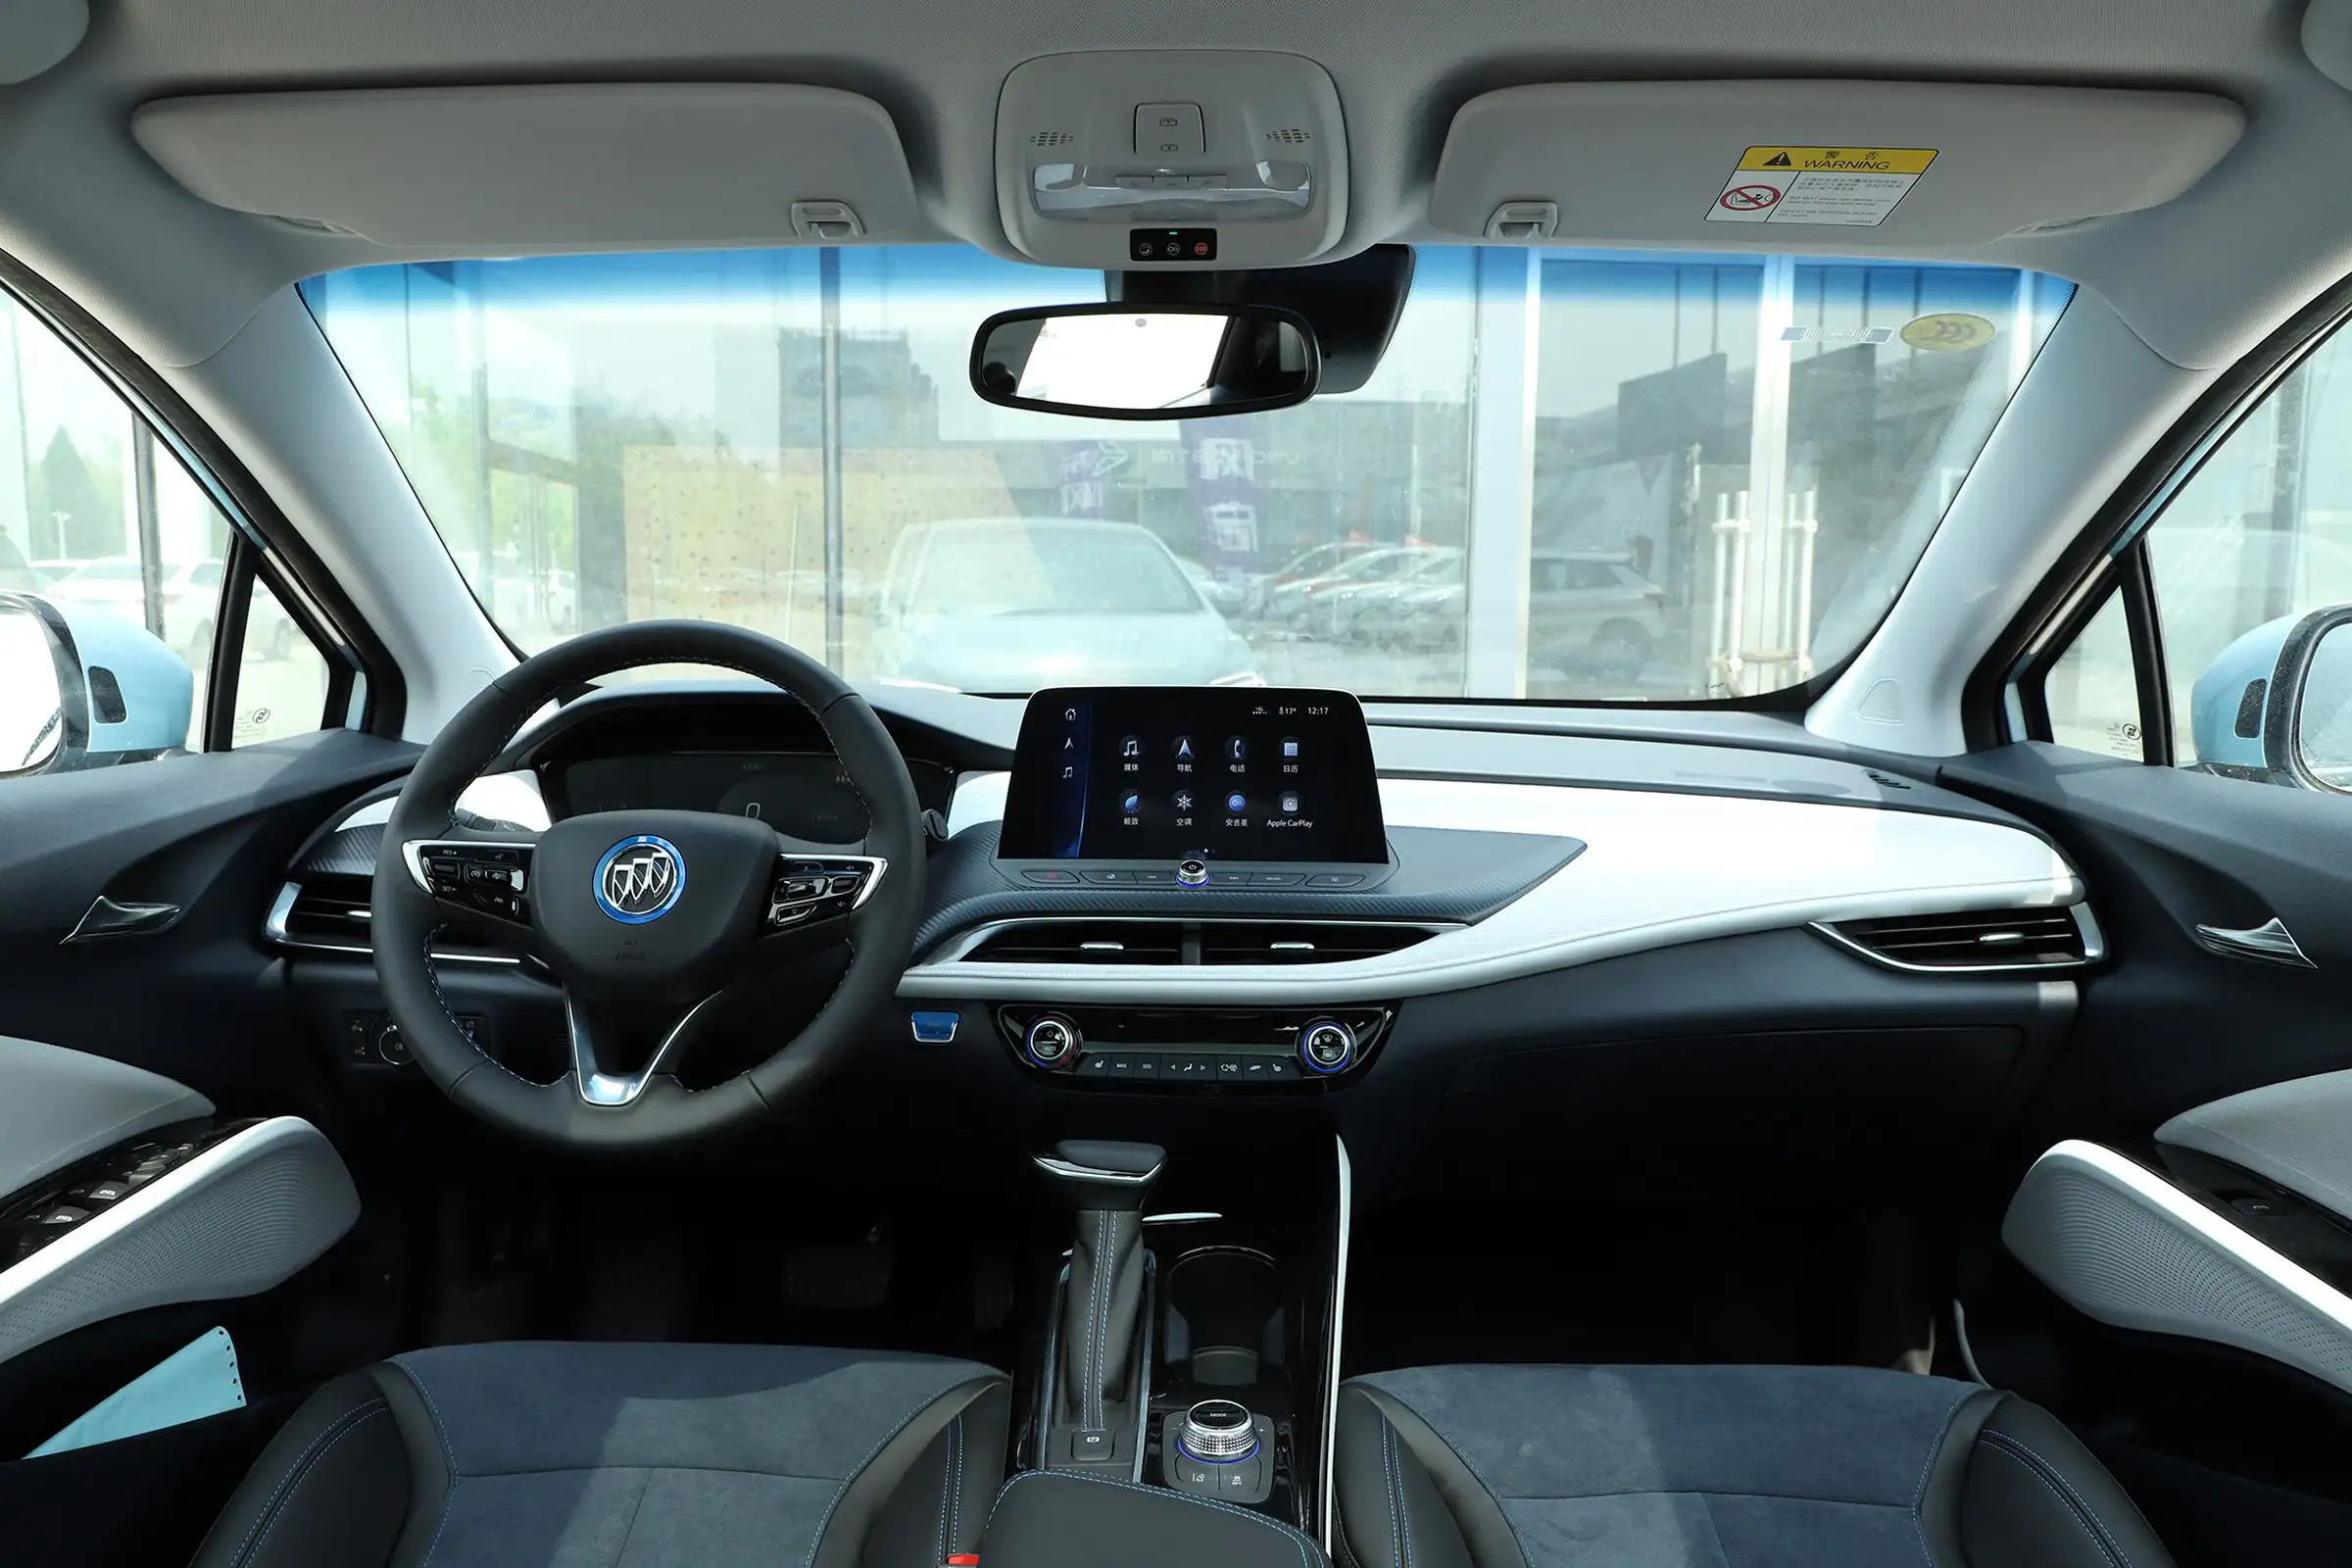 بويك فليت 6 2021 2022 2023 سيارات كهربائية مستعملة مدمجة هاتشباك رخيصة كهربائية بالكامل صندوق تروس أوتوماتيكي الصين سيارات كهربائية مستعملة